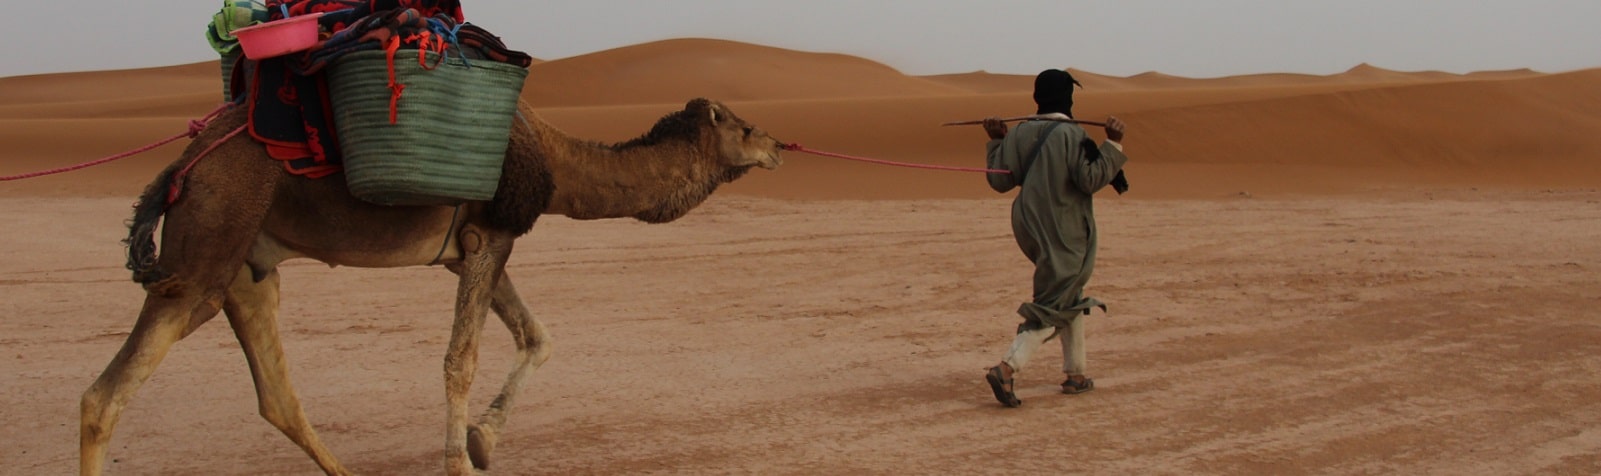 camel trek morocco m'hamid